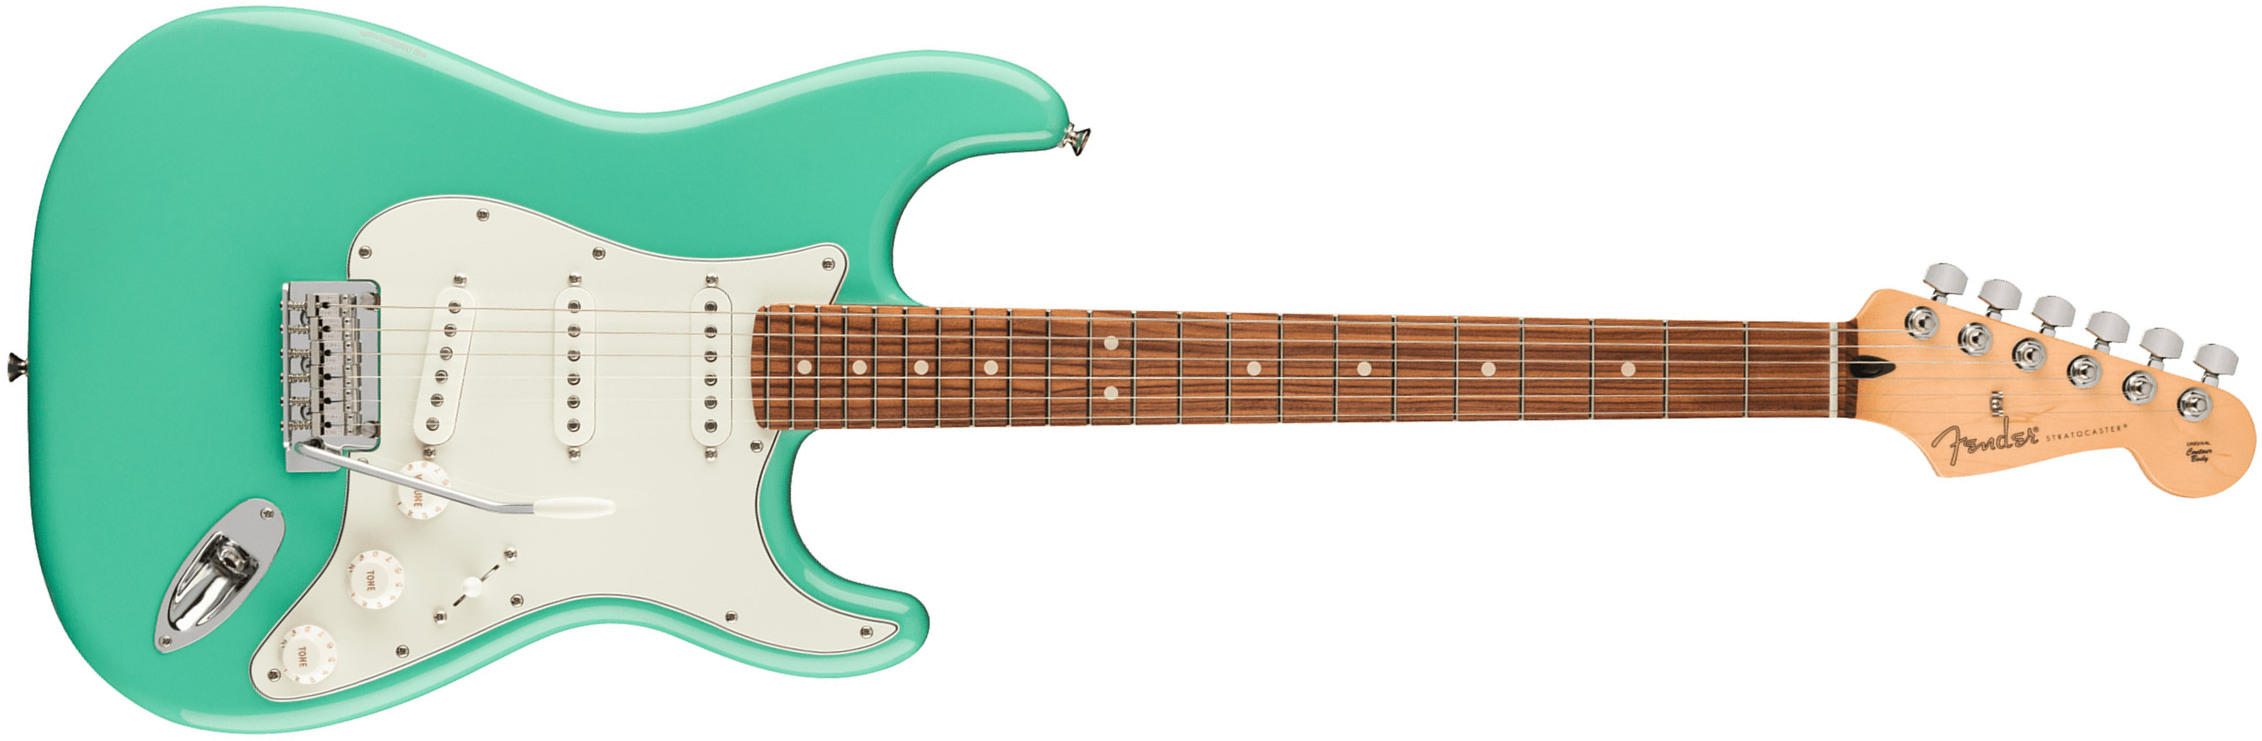 Fender Strat Player Mex 2023 3s Trem Pf - Seafoam Green - Guitare Électrique Forme Str - Main picture